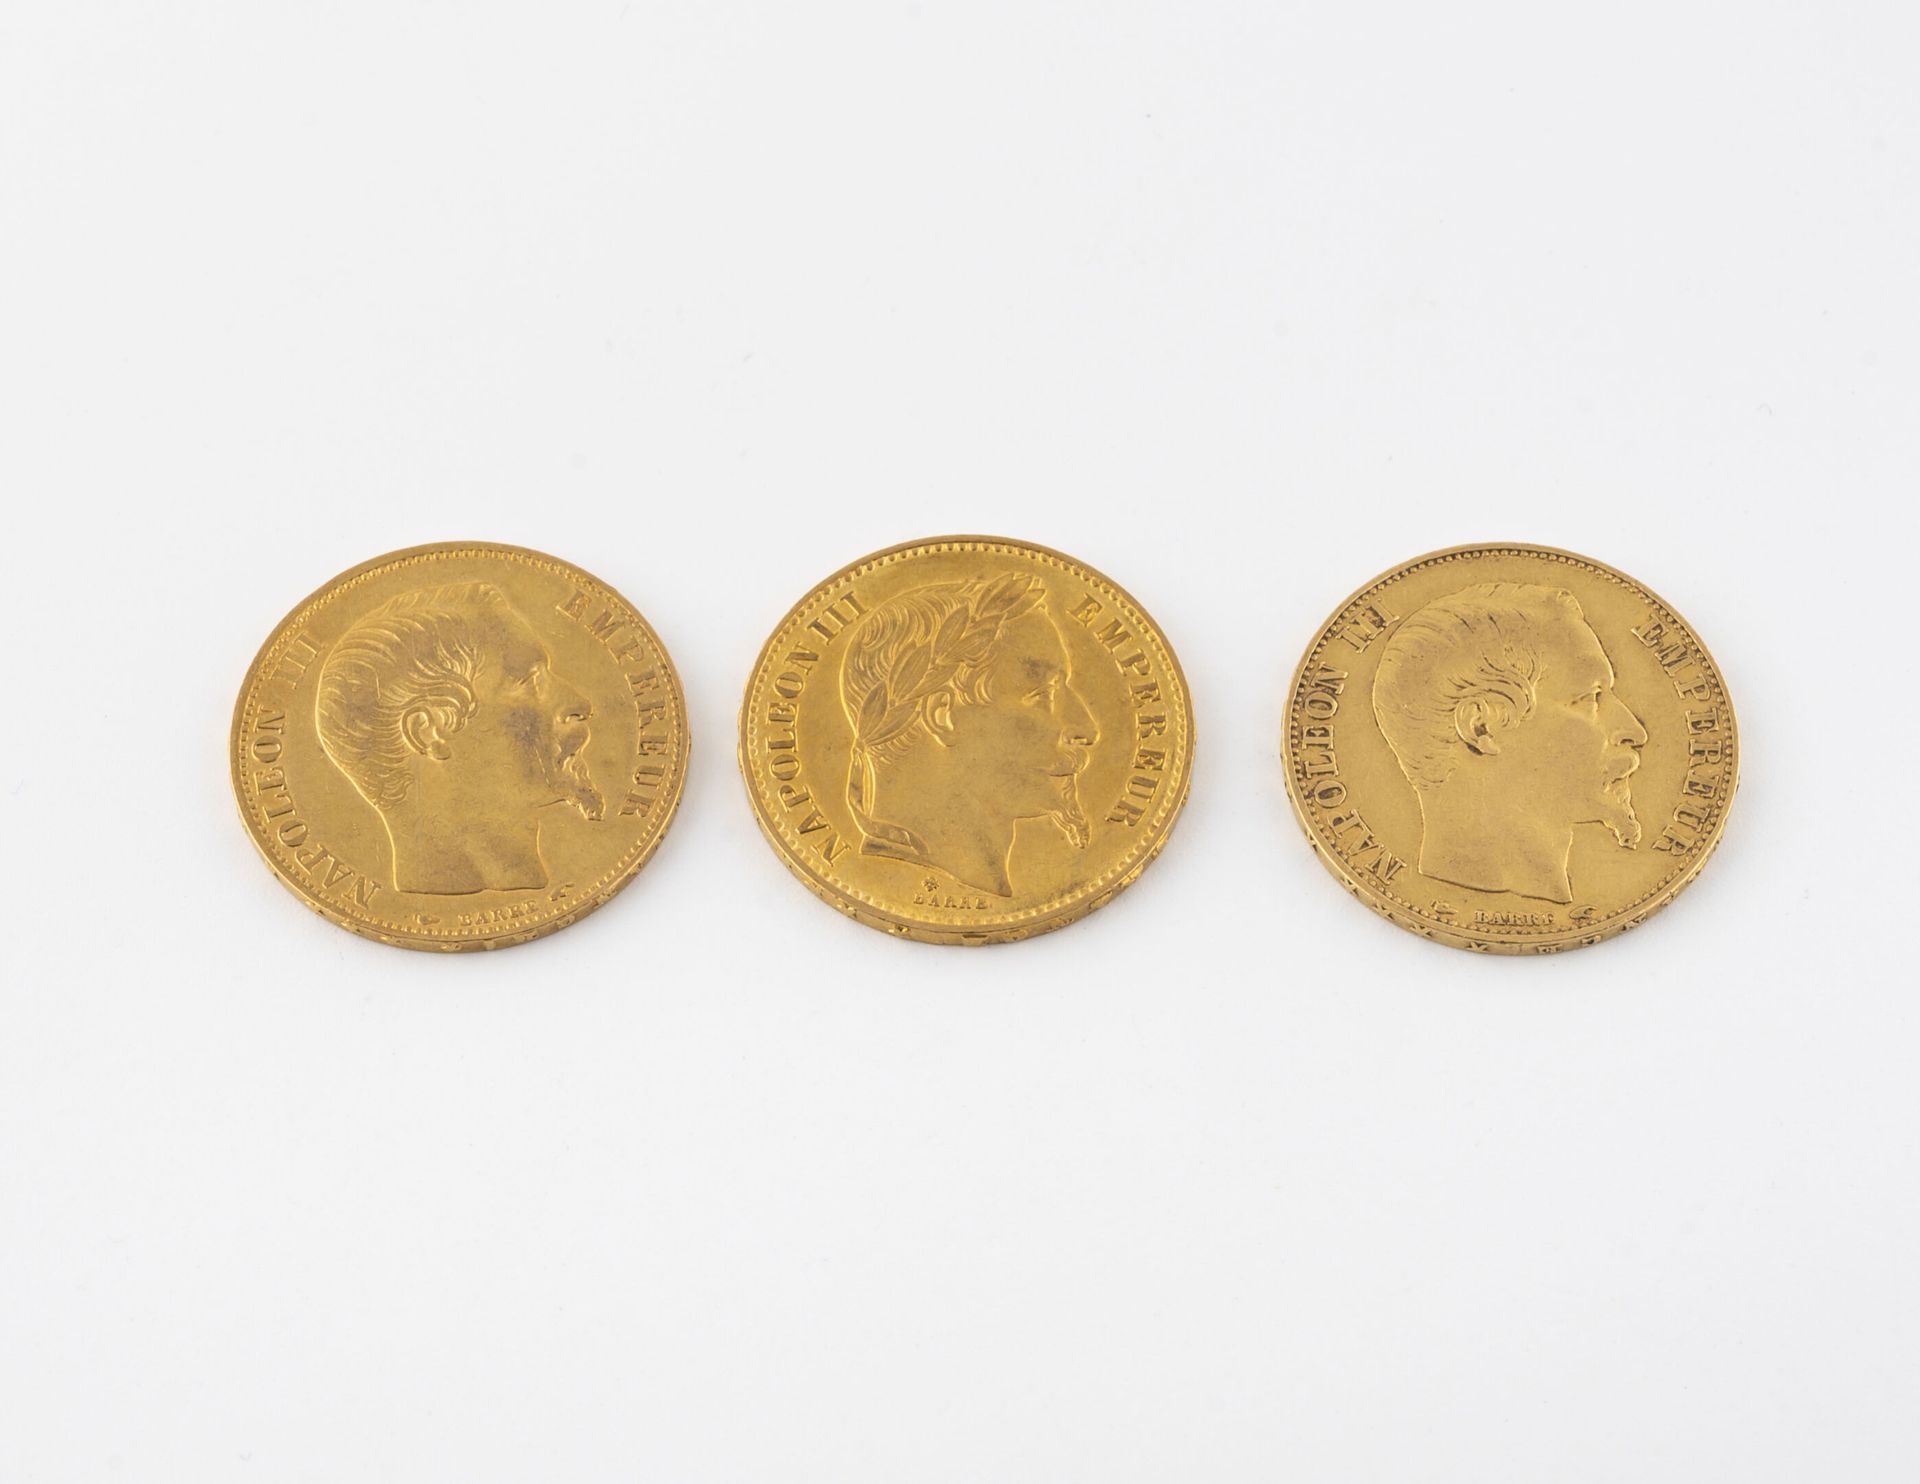 FRANCE 3 monete d'oro da 20 franchi.
Due monete del 1854 e una del 1869. Napoleo&hellip;